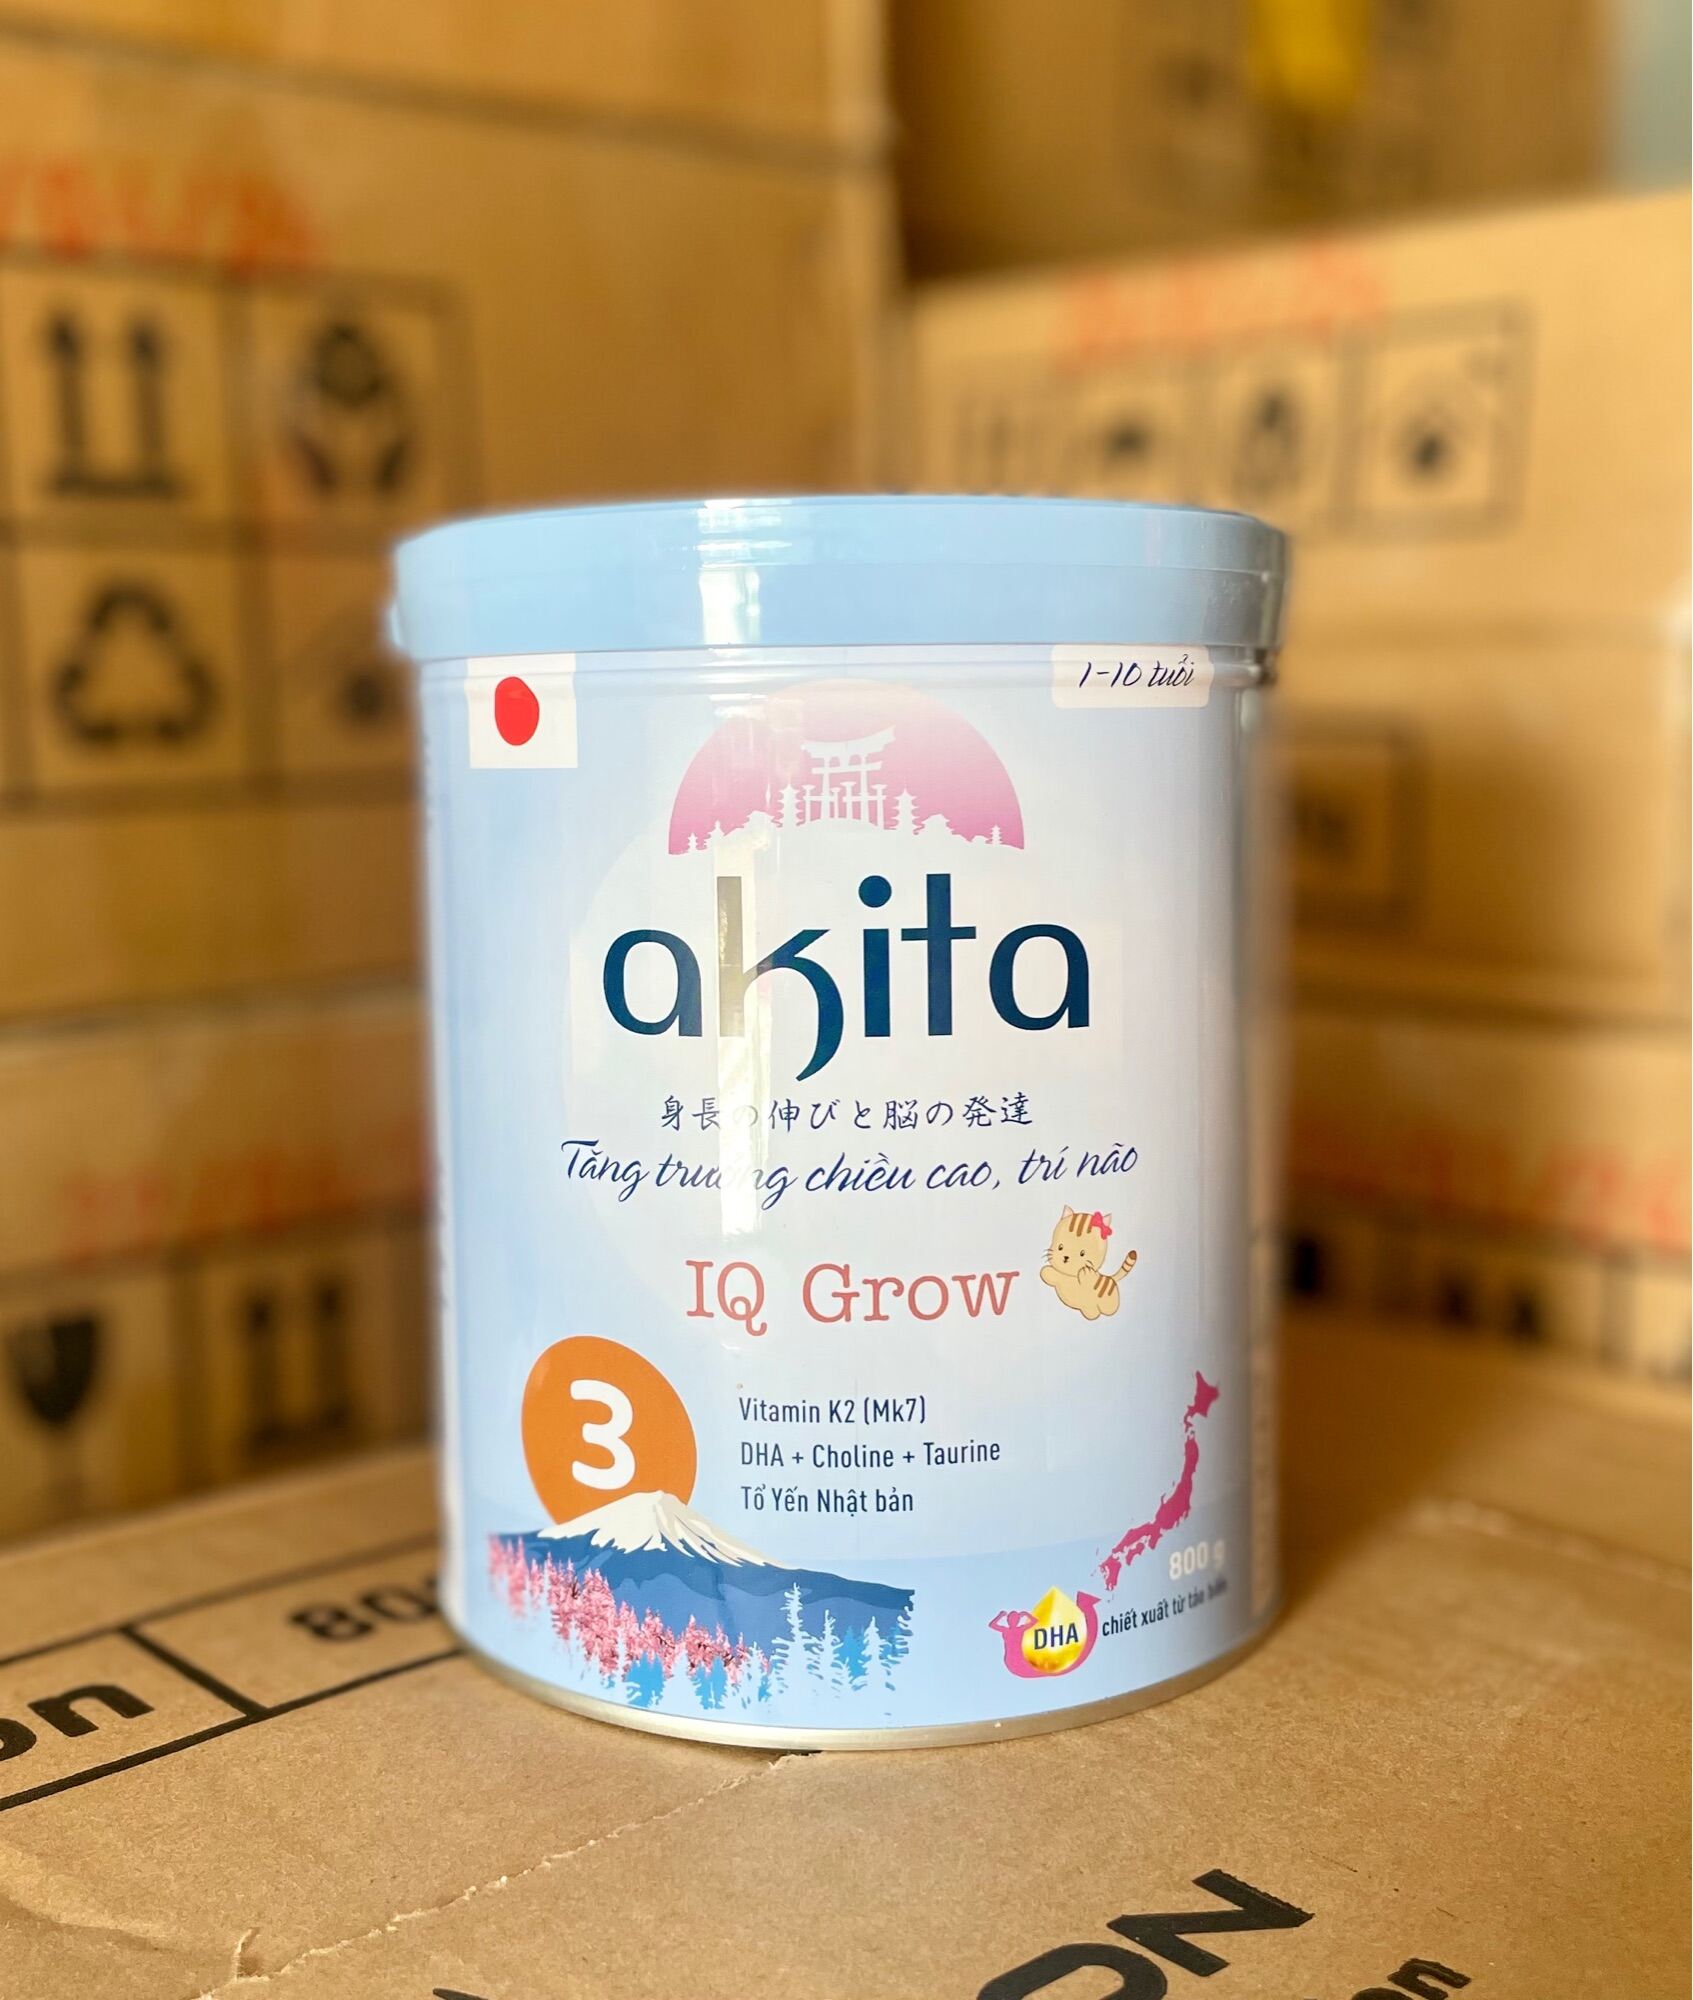 Sữa Akita IQ Grow Chiều cao trí não -Tổ Yến Nhật Bản 1-10 tuổi (800g)